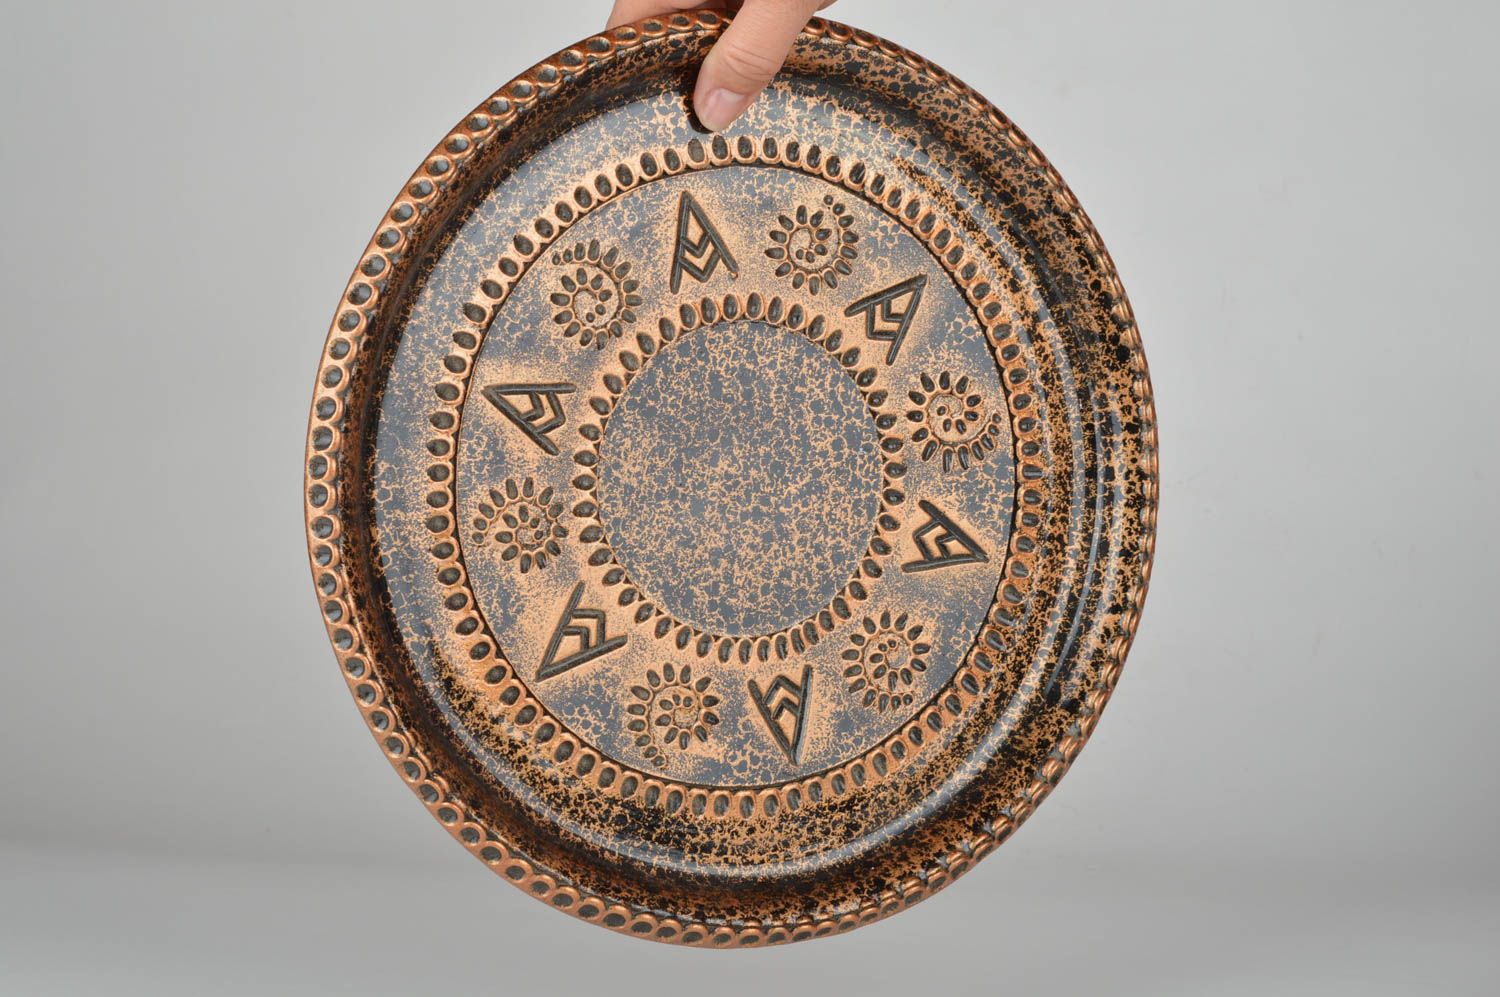 Большой керамический поднос круглый цвета бронзы необычный ручной работы фото 3